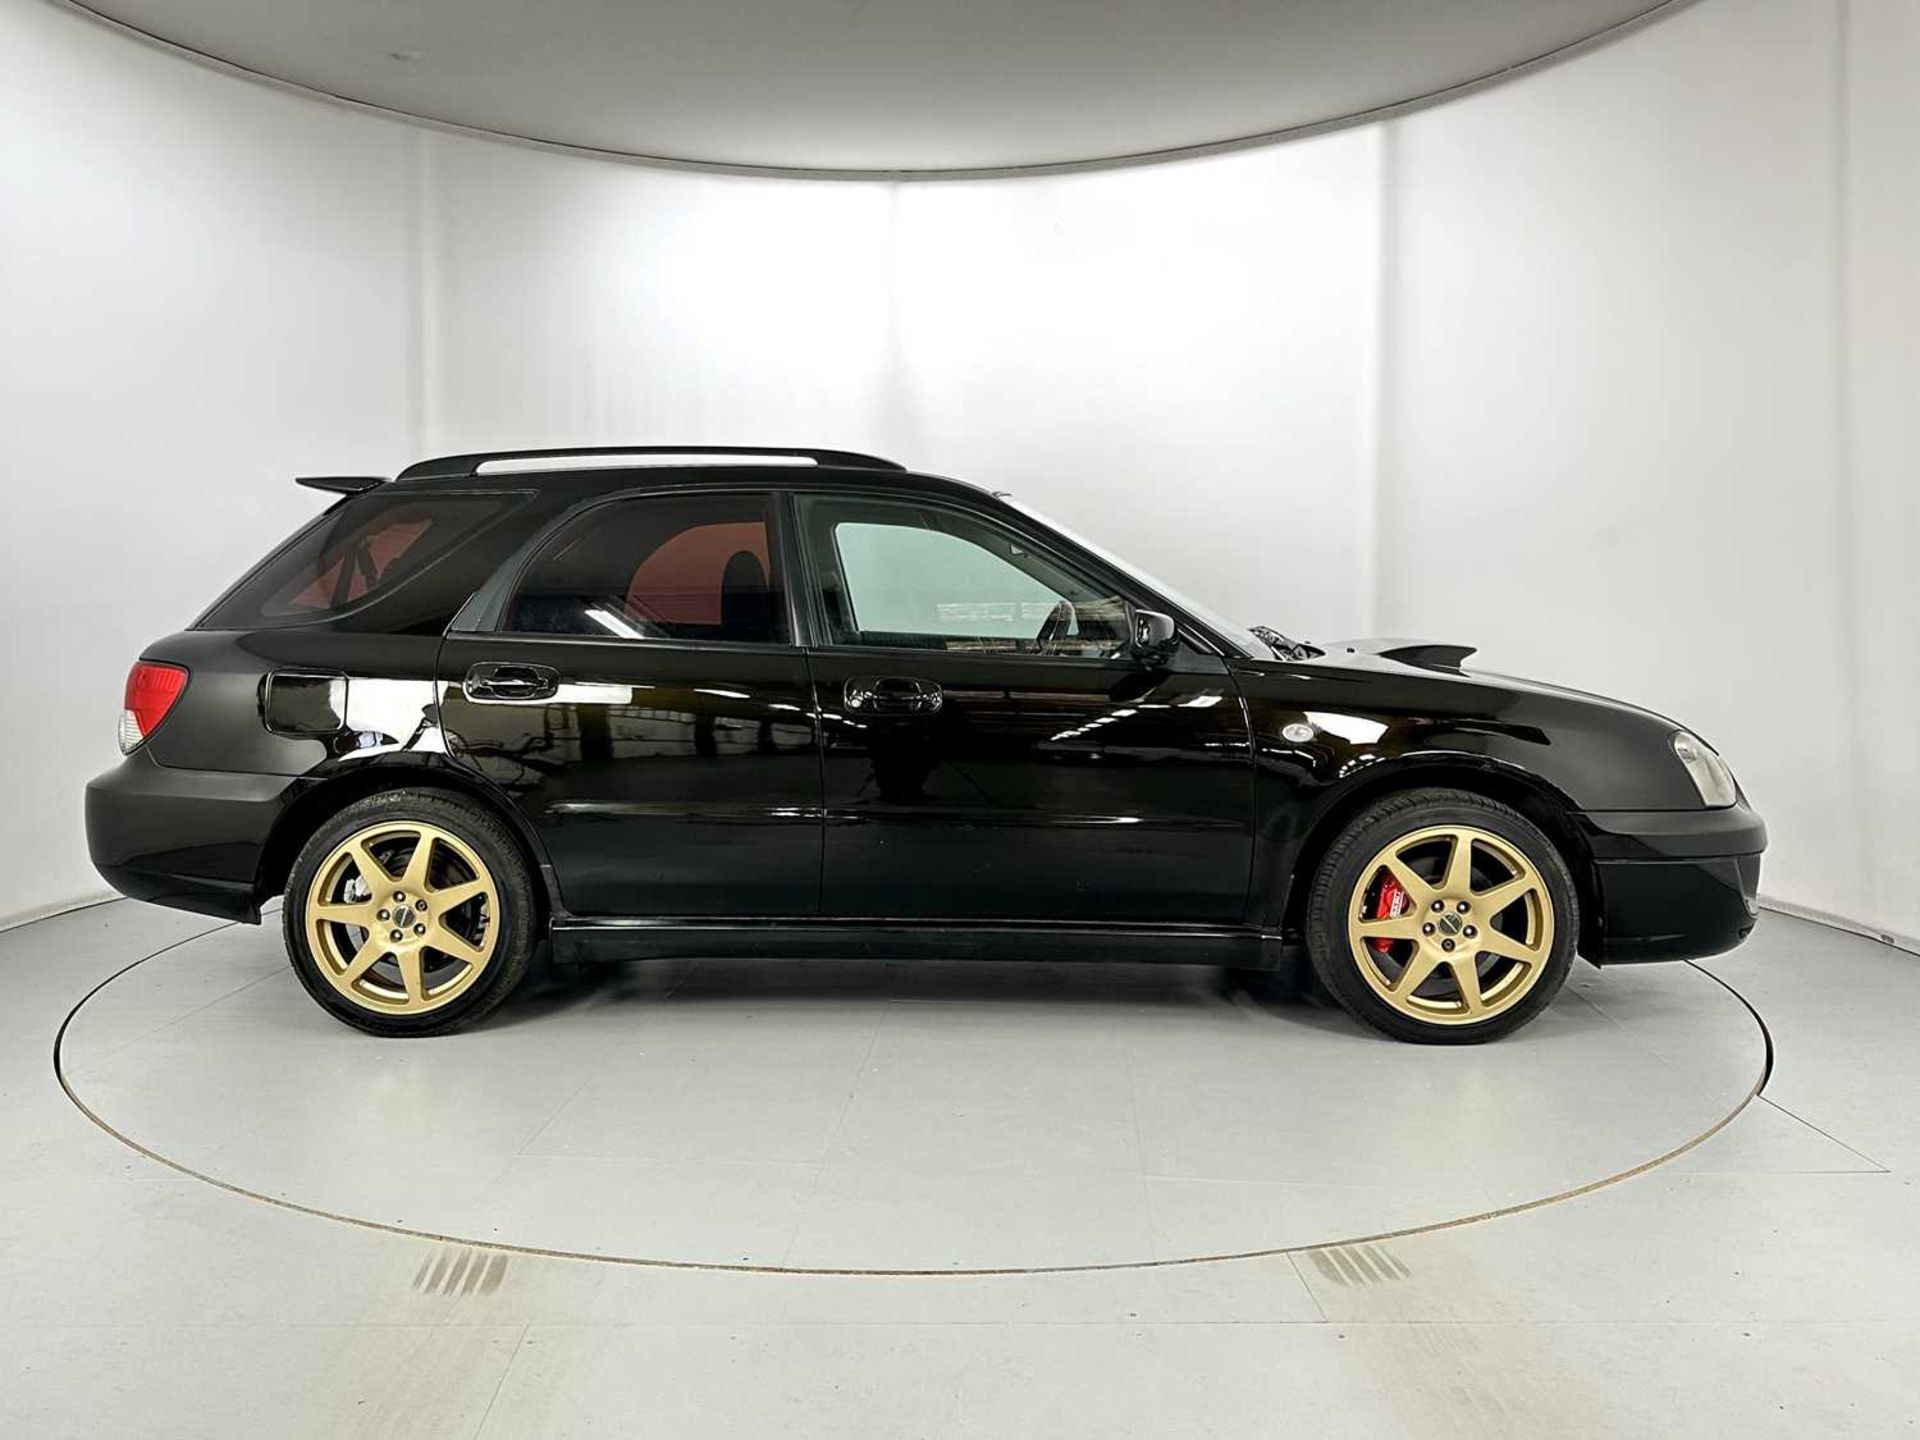 2004 Subaru Impreza WRX - Bild 11 aus 35